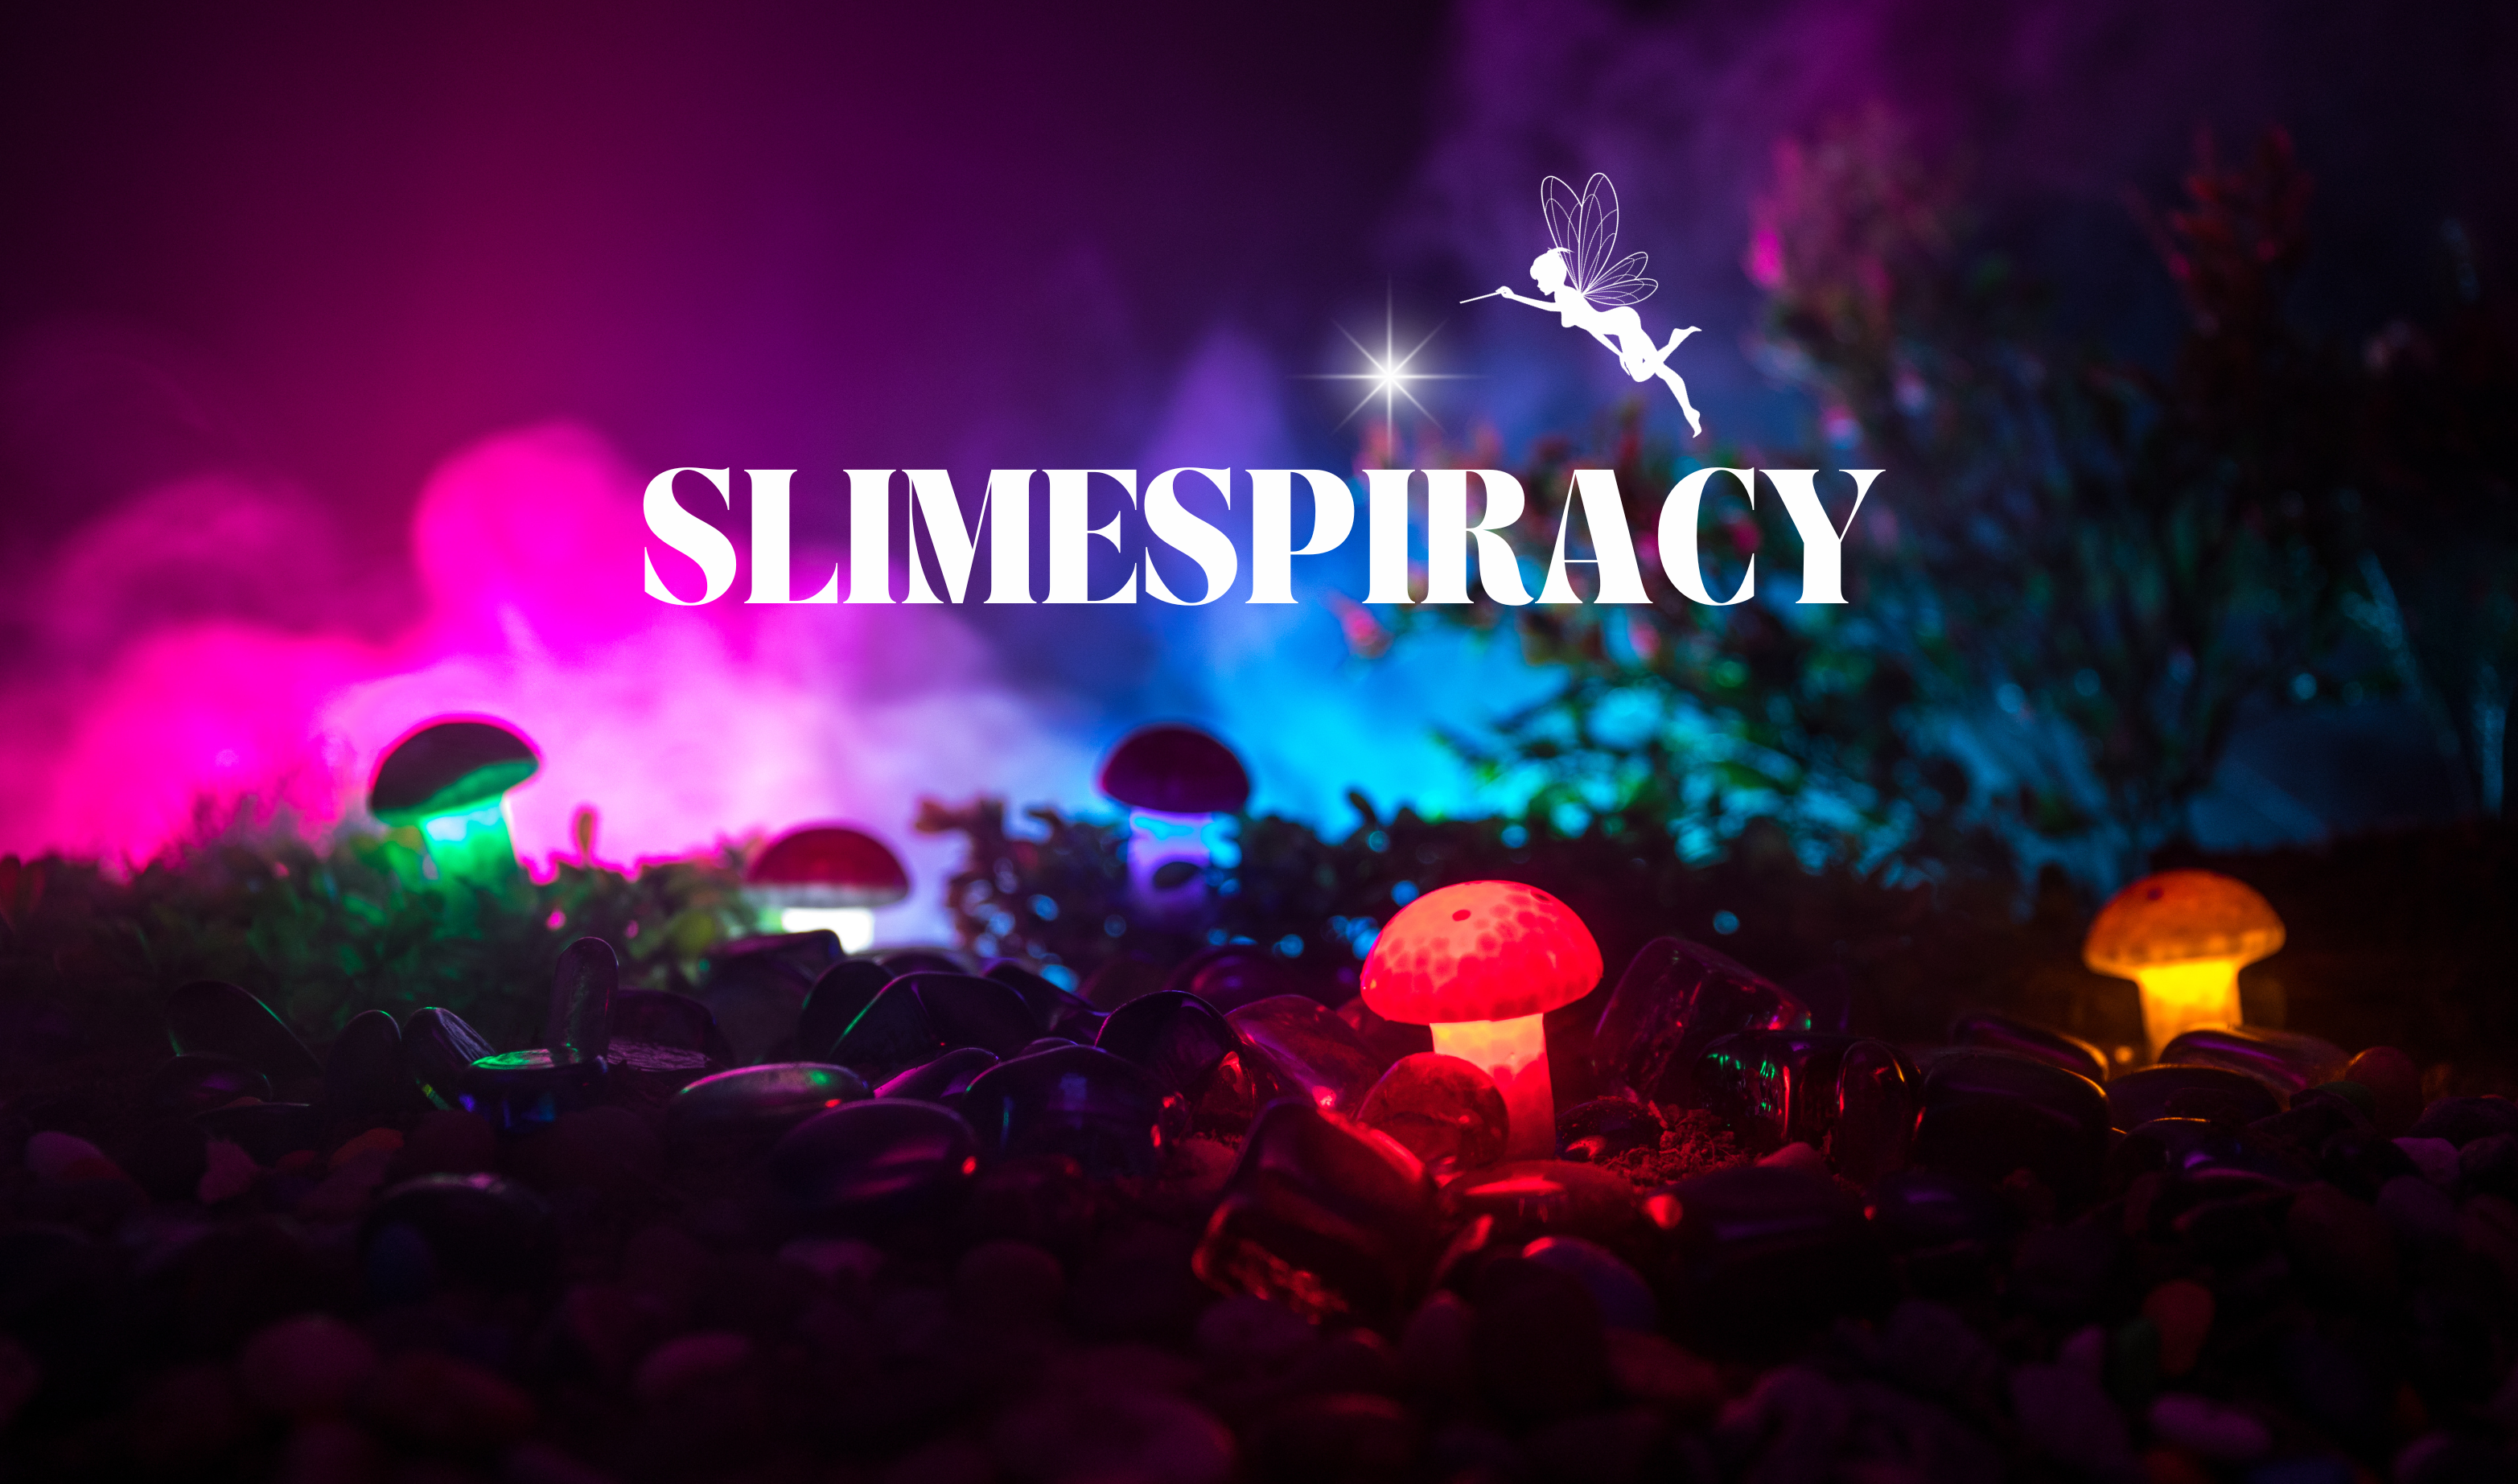 Slimespiracy Slime Shop Home Page